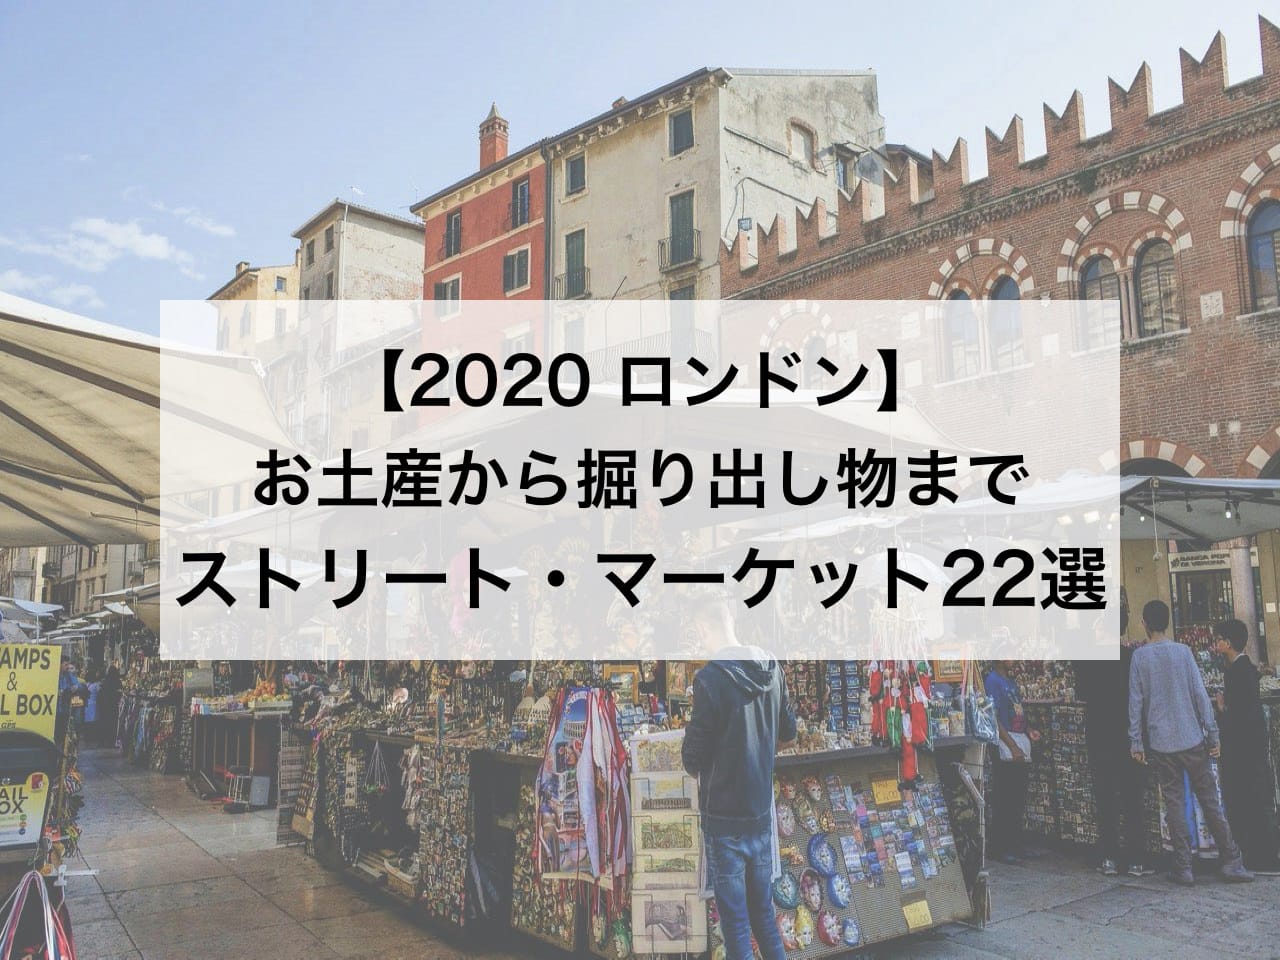 2020_05 minimal traveler, eyecatch, london-streetmarket